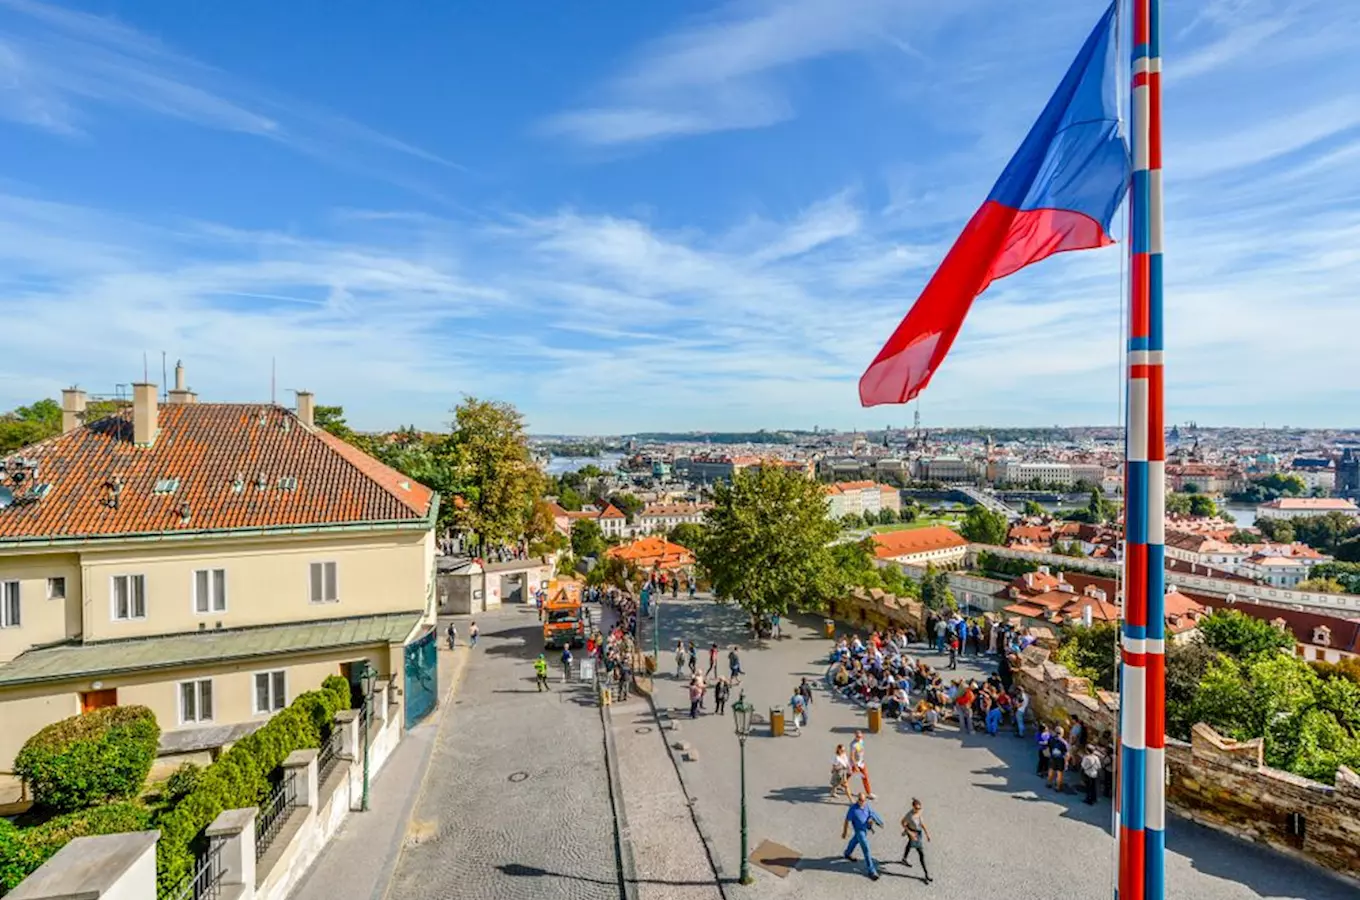 Užijte si státní svátek na památkách po celém Česku